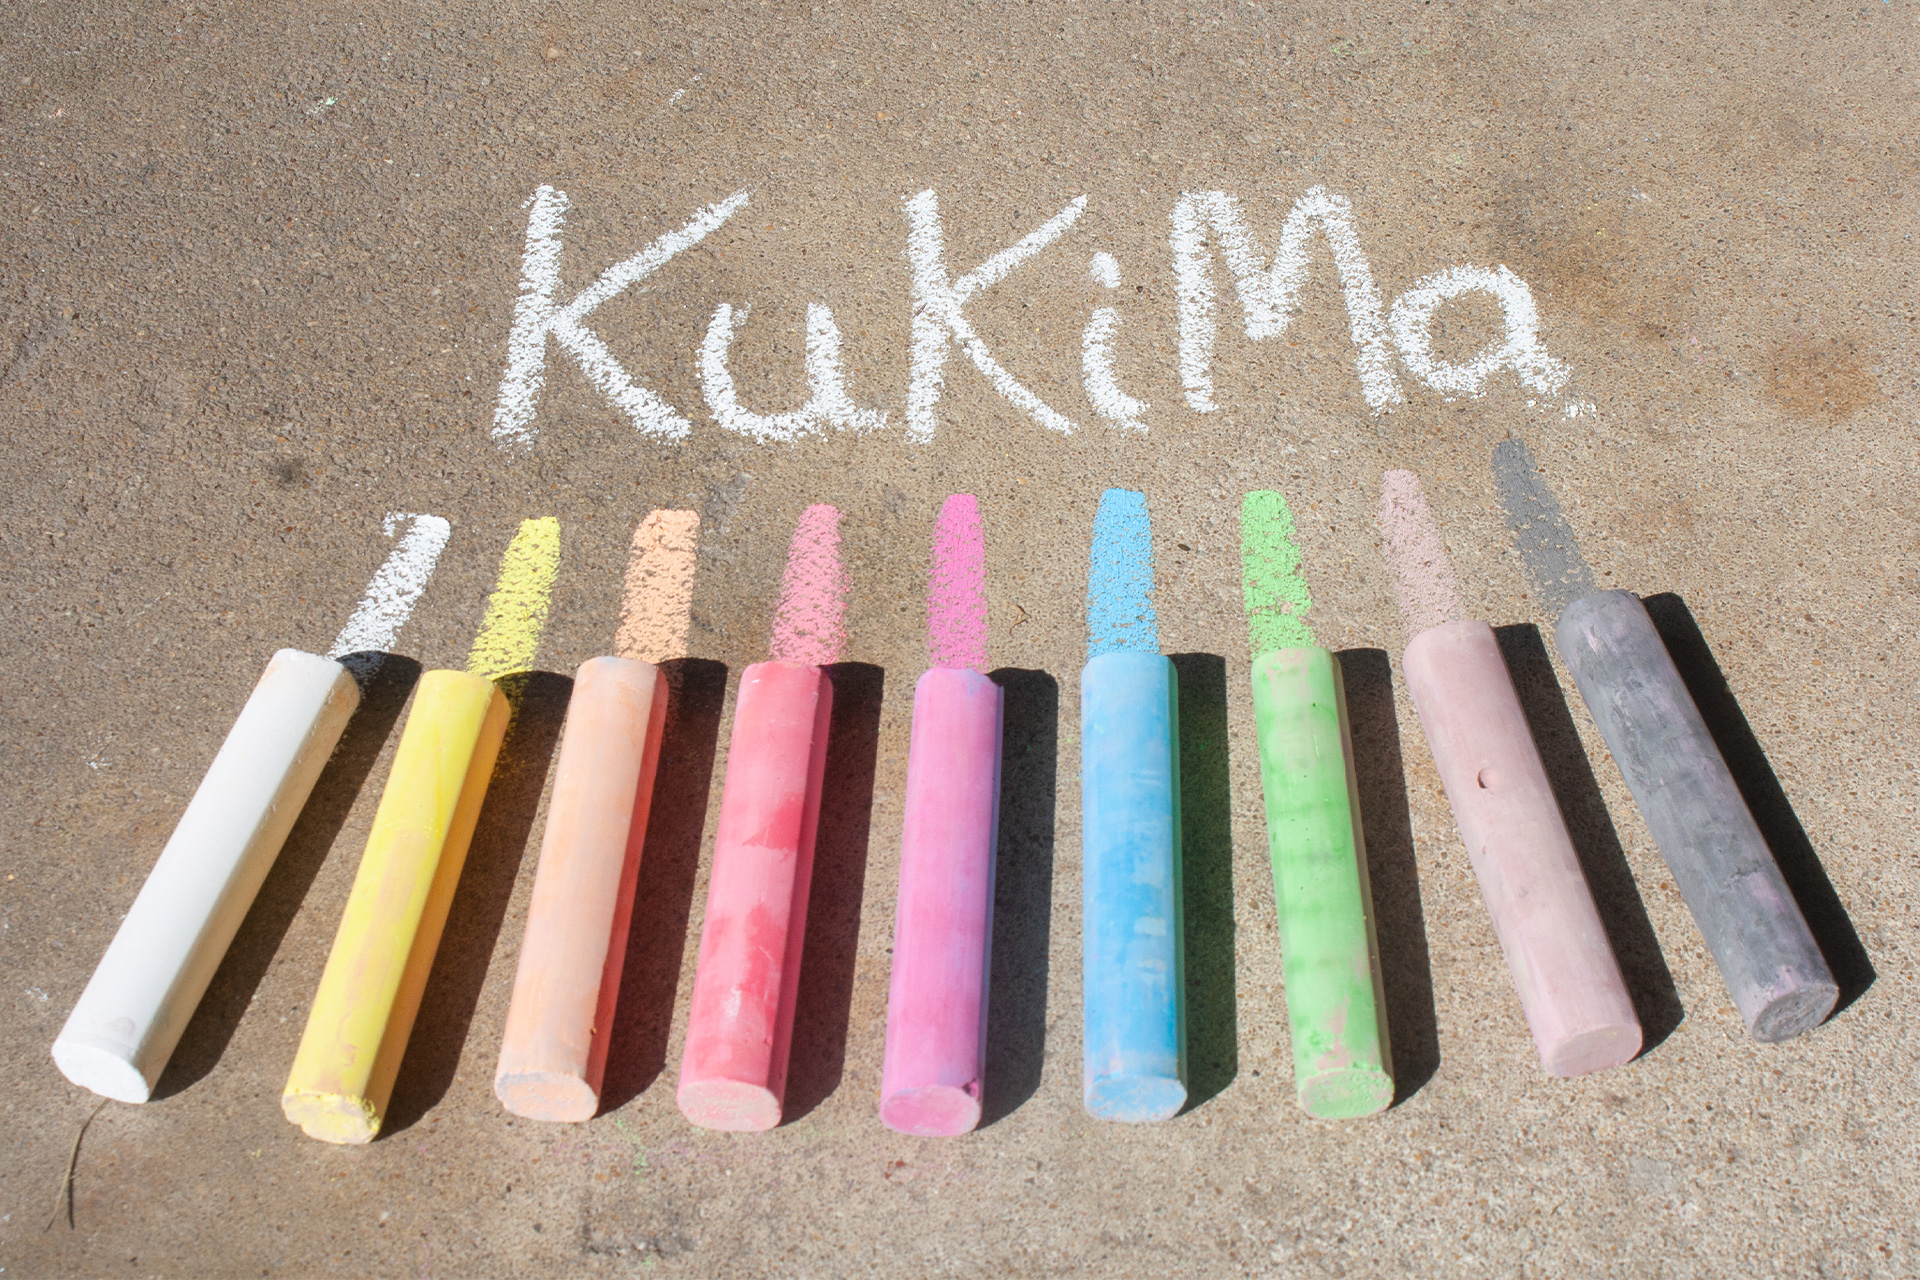 Der Farbauftrag der KuKiMa Kreiden ist weich und satt. Die Farben leuchten kräftig, die Kreiden hinterlassen eine breite Spur